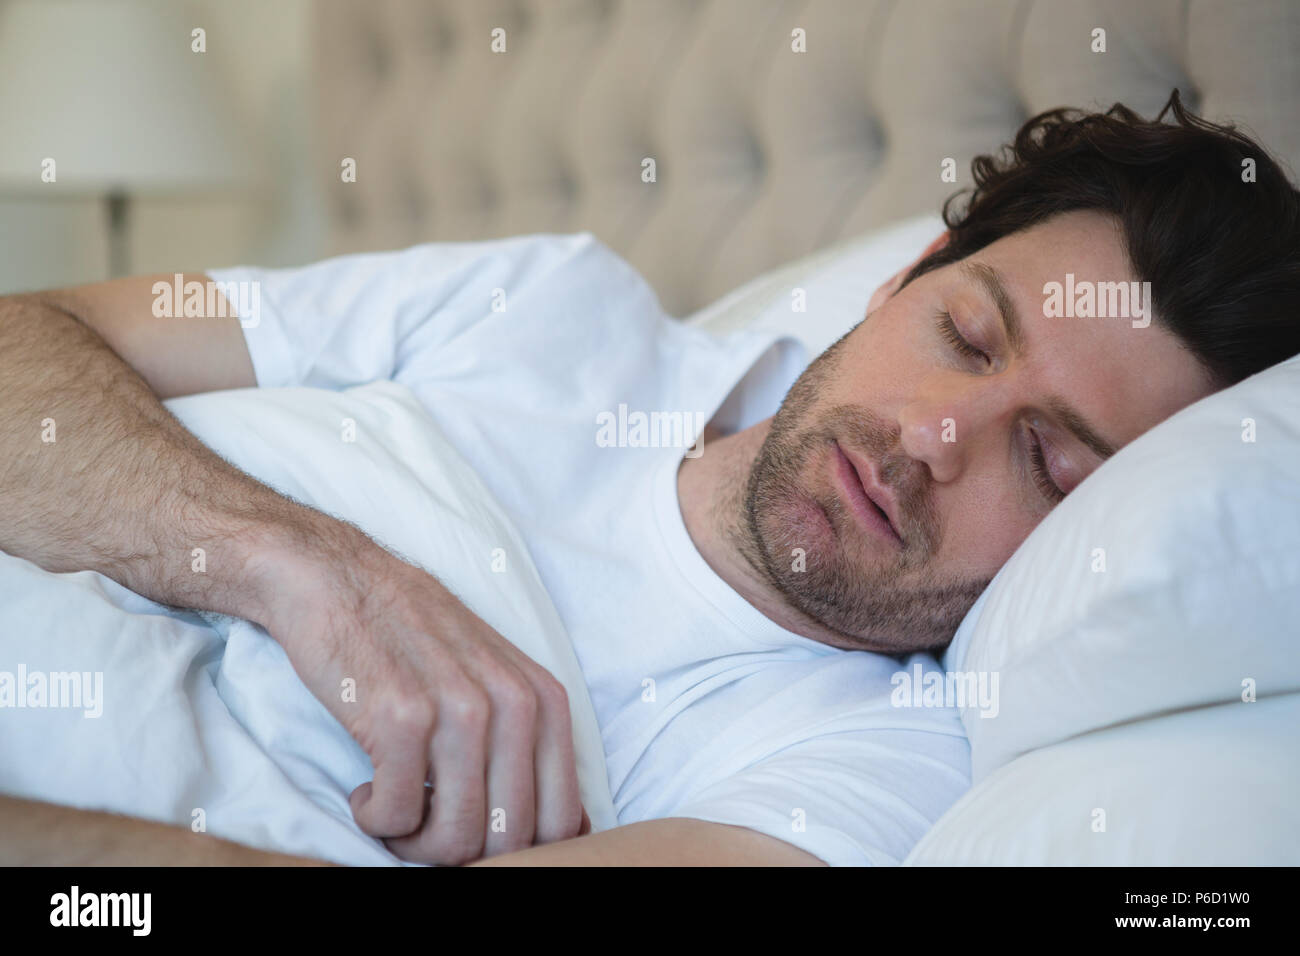 Man sleeping in bedroom Banque D'Images